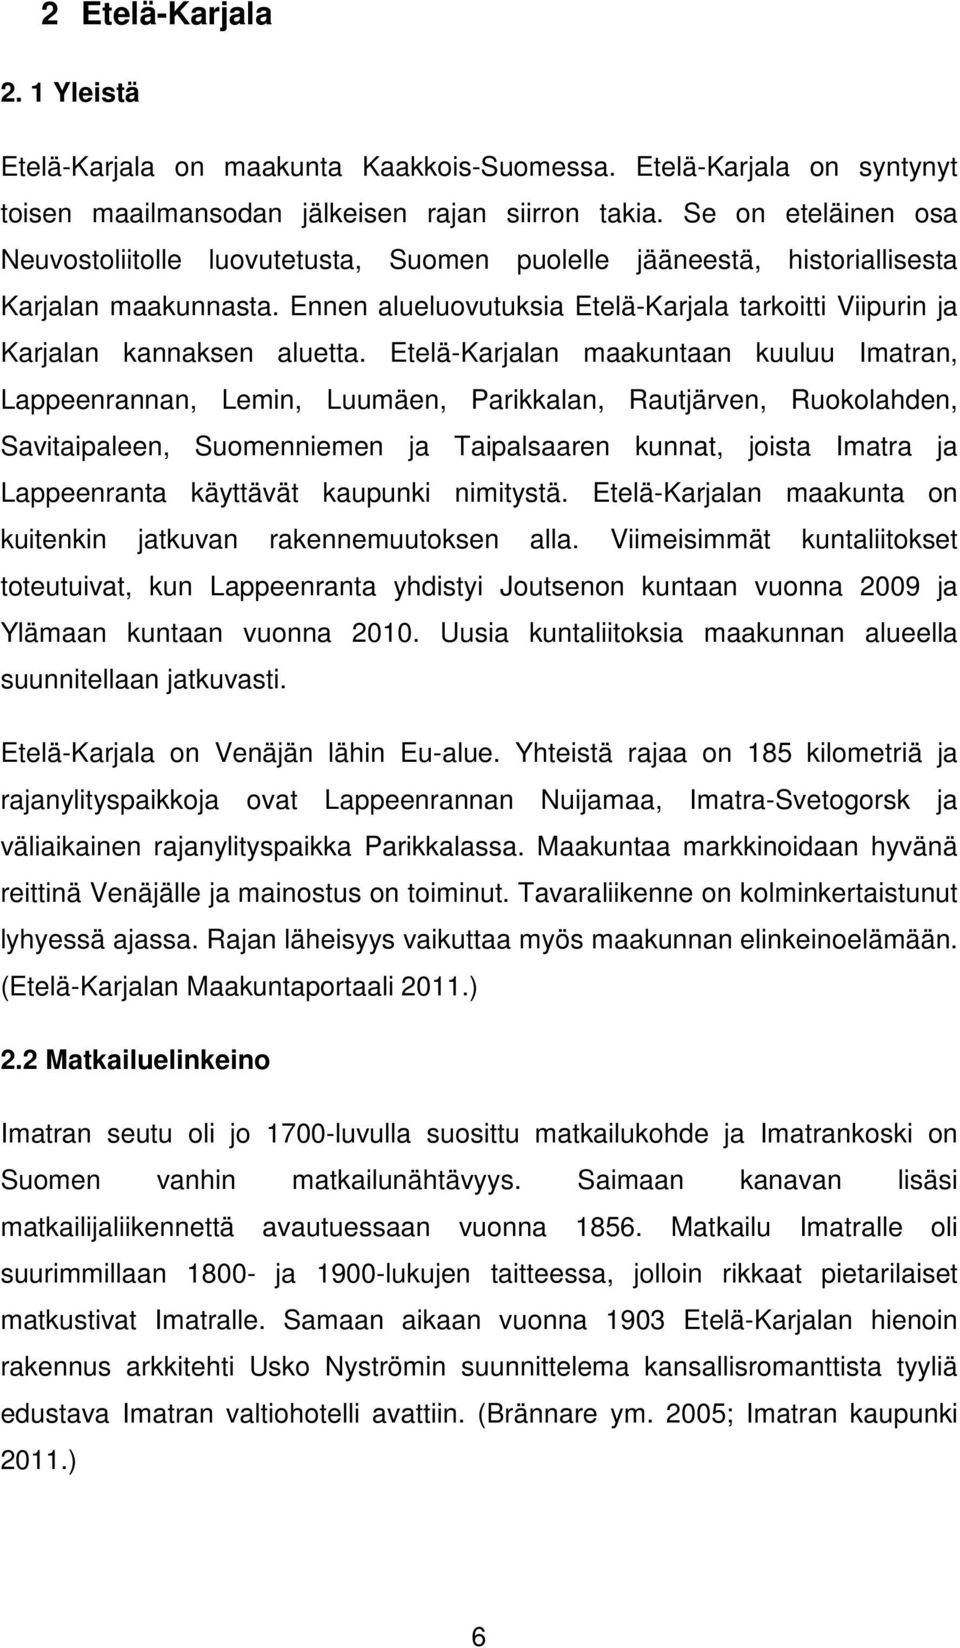 Ennen alueluovutuksia Etelä-Karjala tarkoitti Viipurin ja Karjalan kannaksen aluetta.